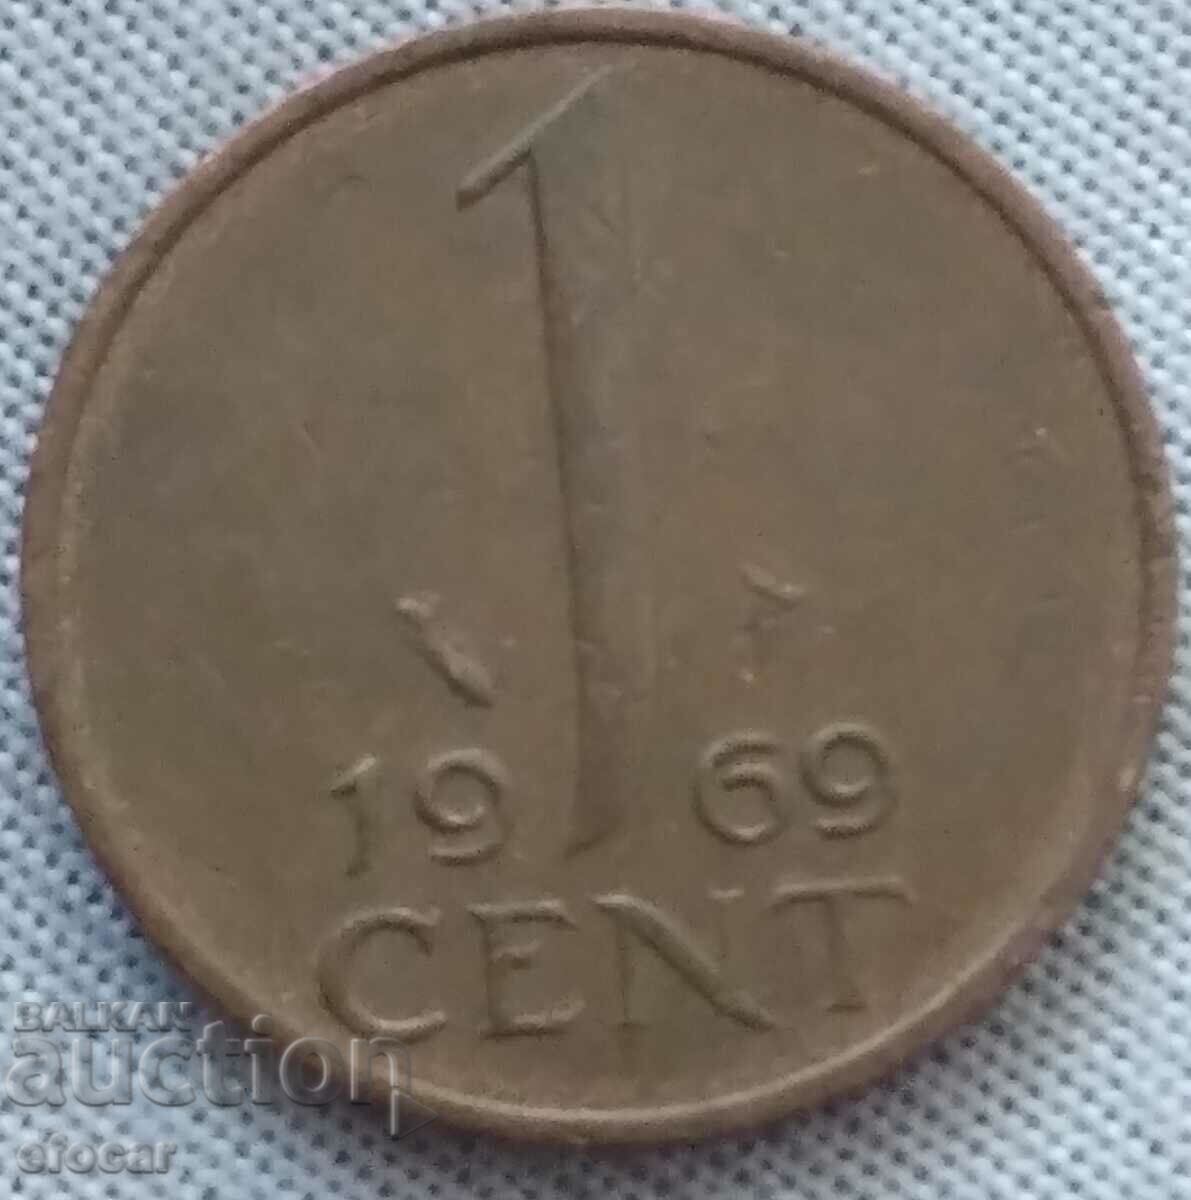 1 cent Țările de Jos 1969 începe de la 0,01 cent